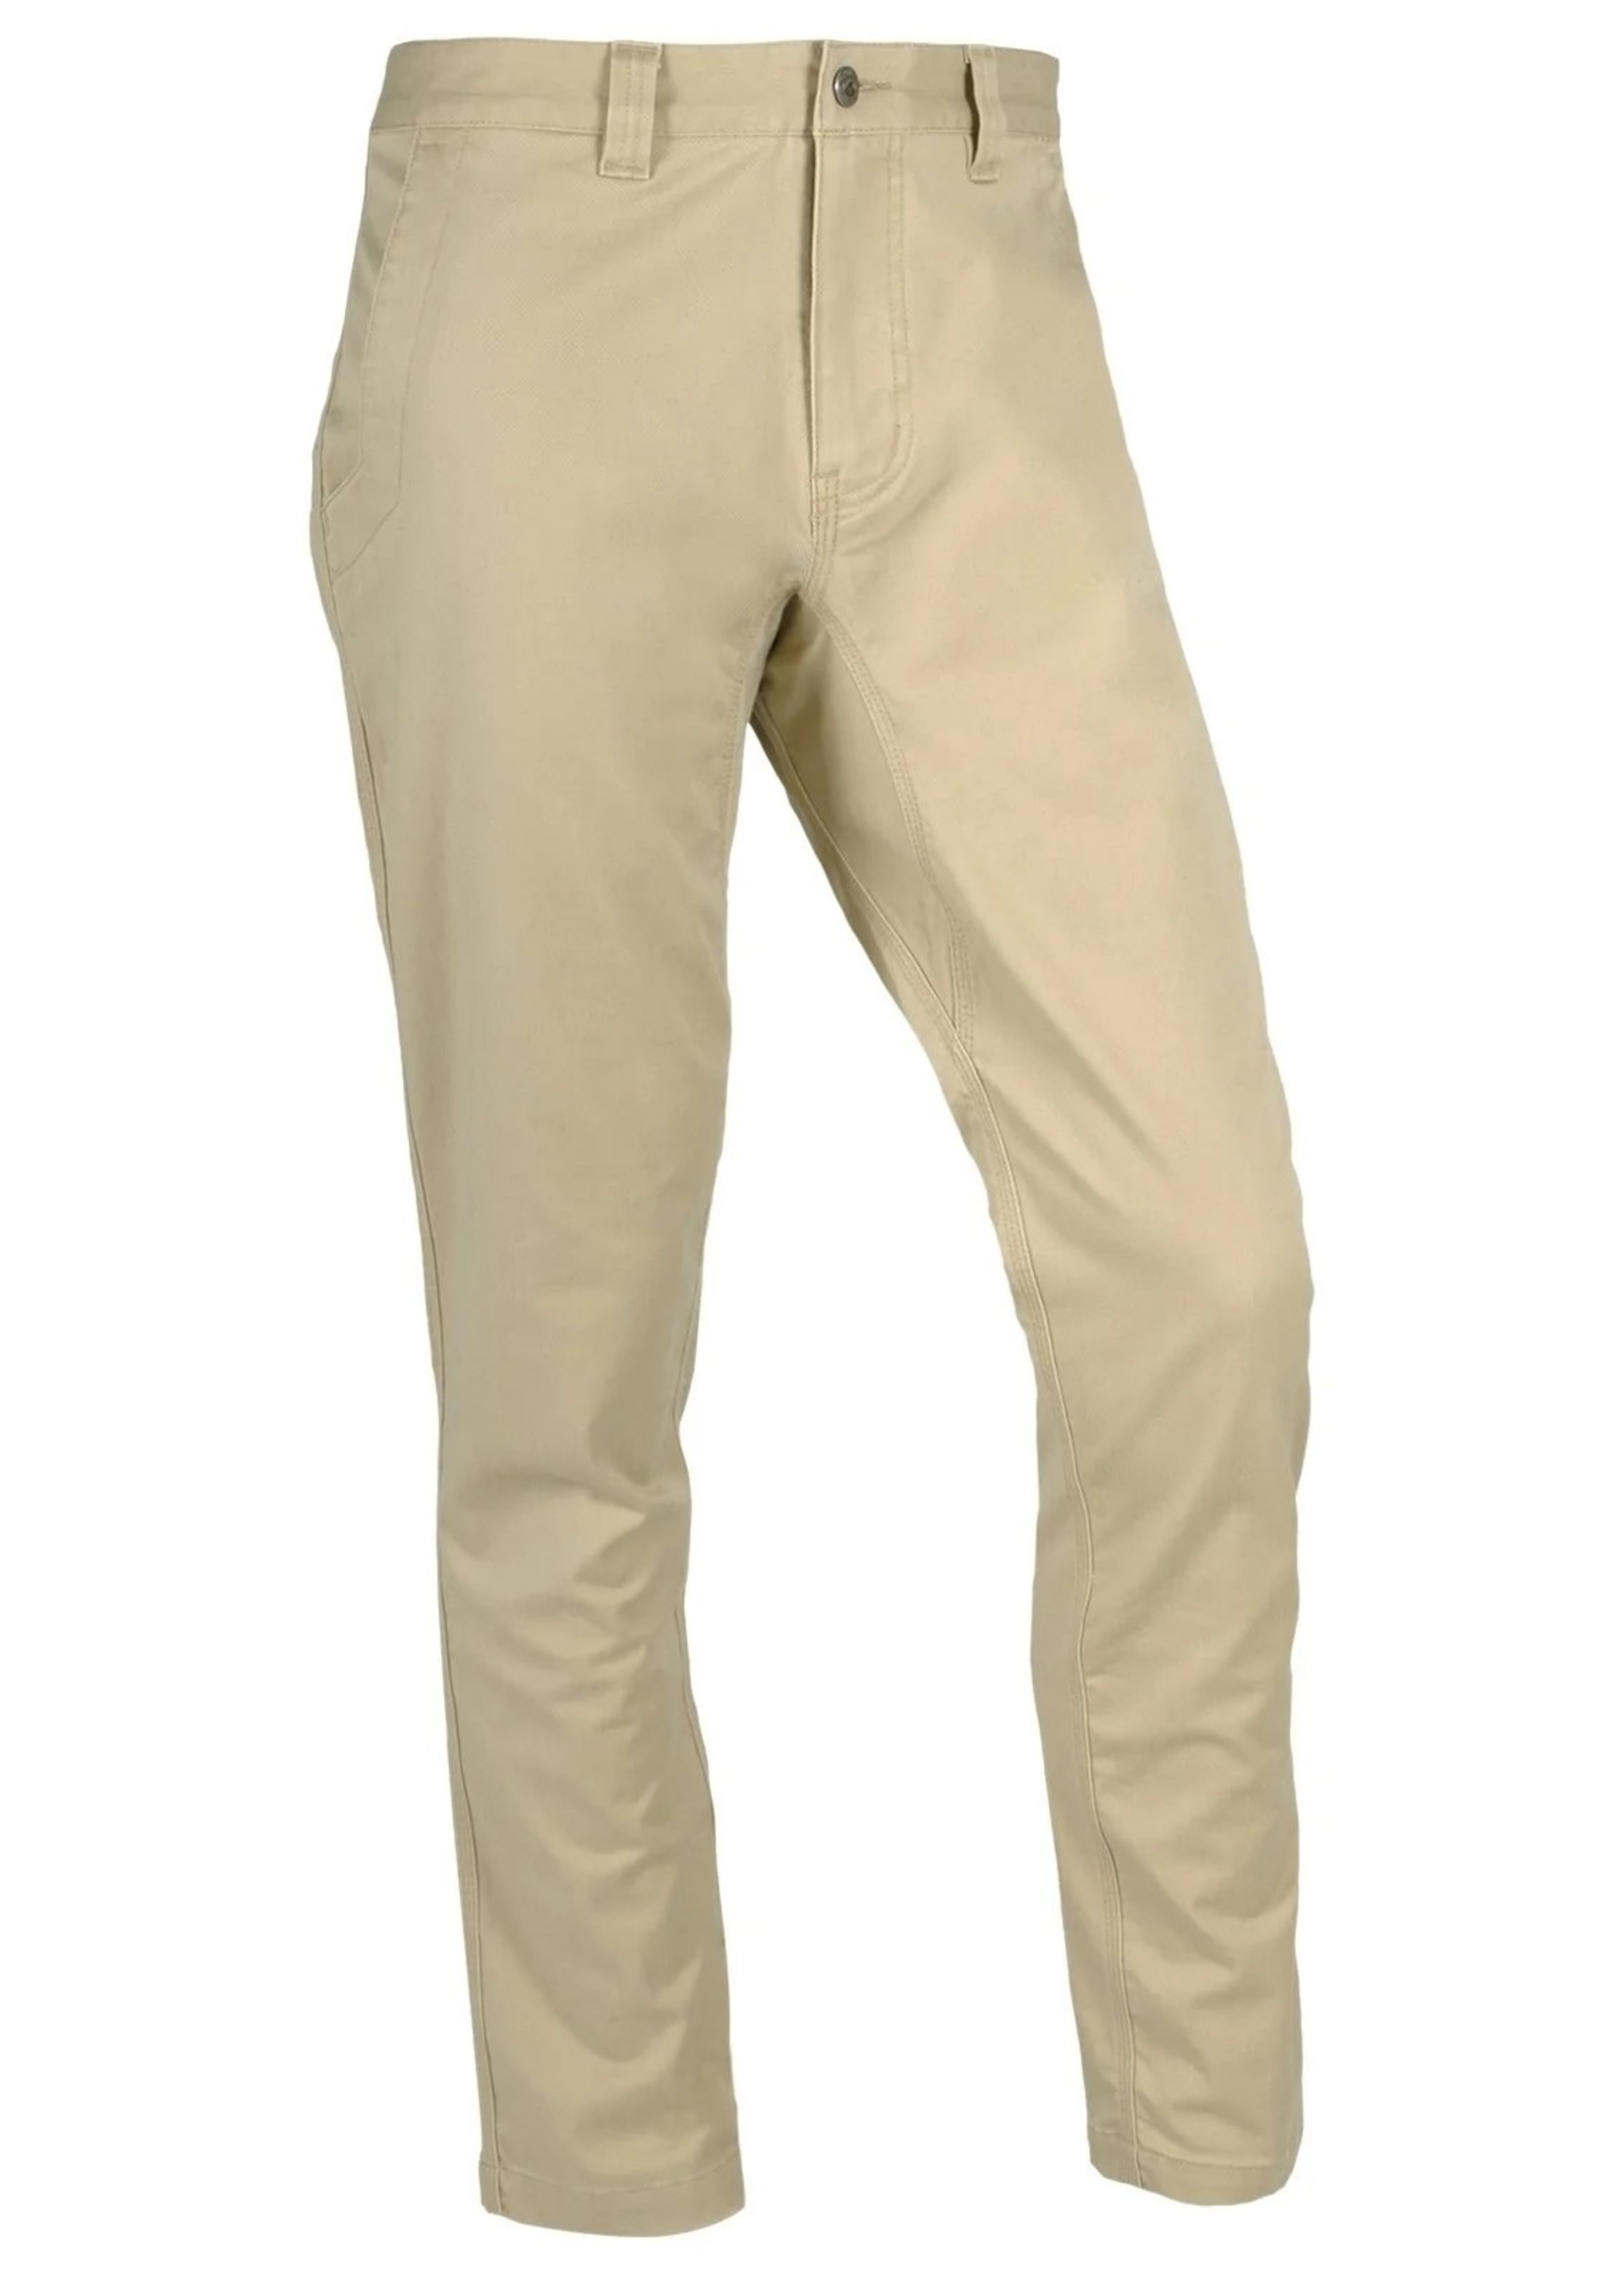 Mountain Khakis Men's Teton Pant Relaxed Fit